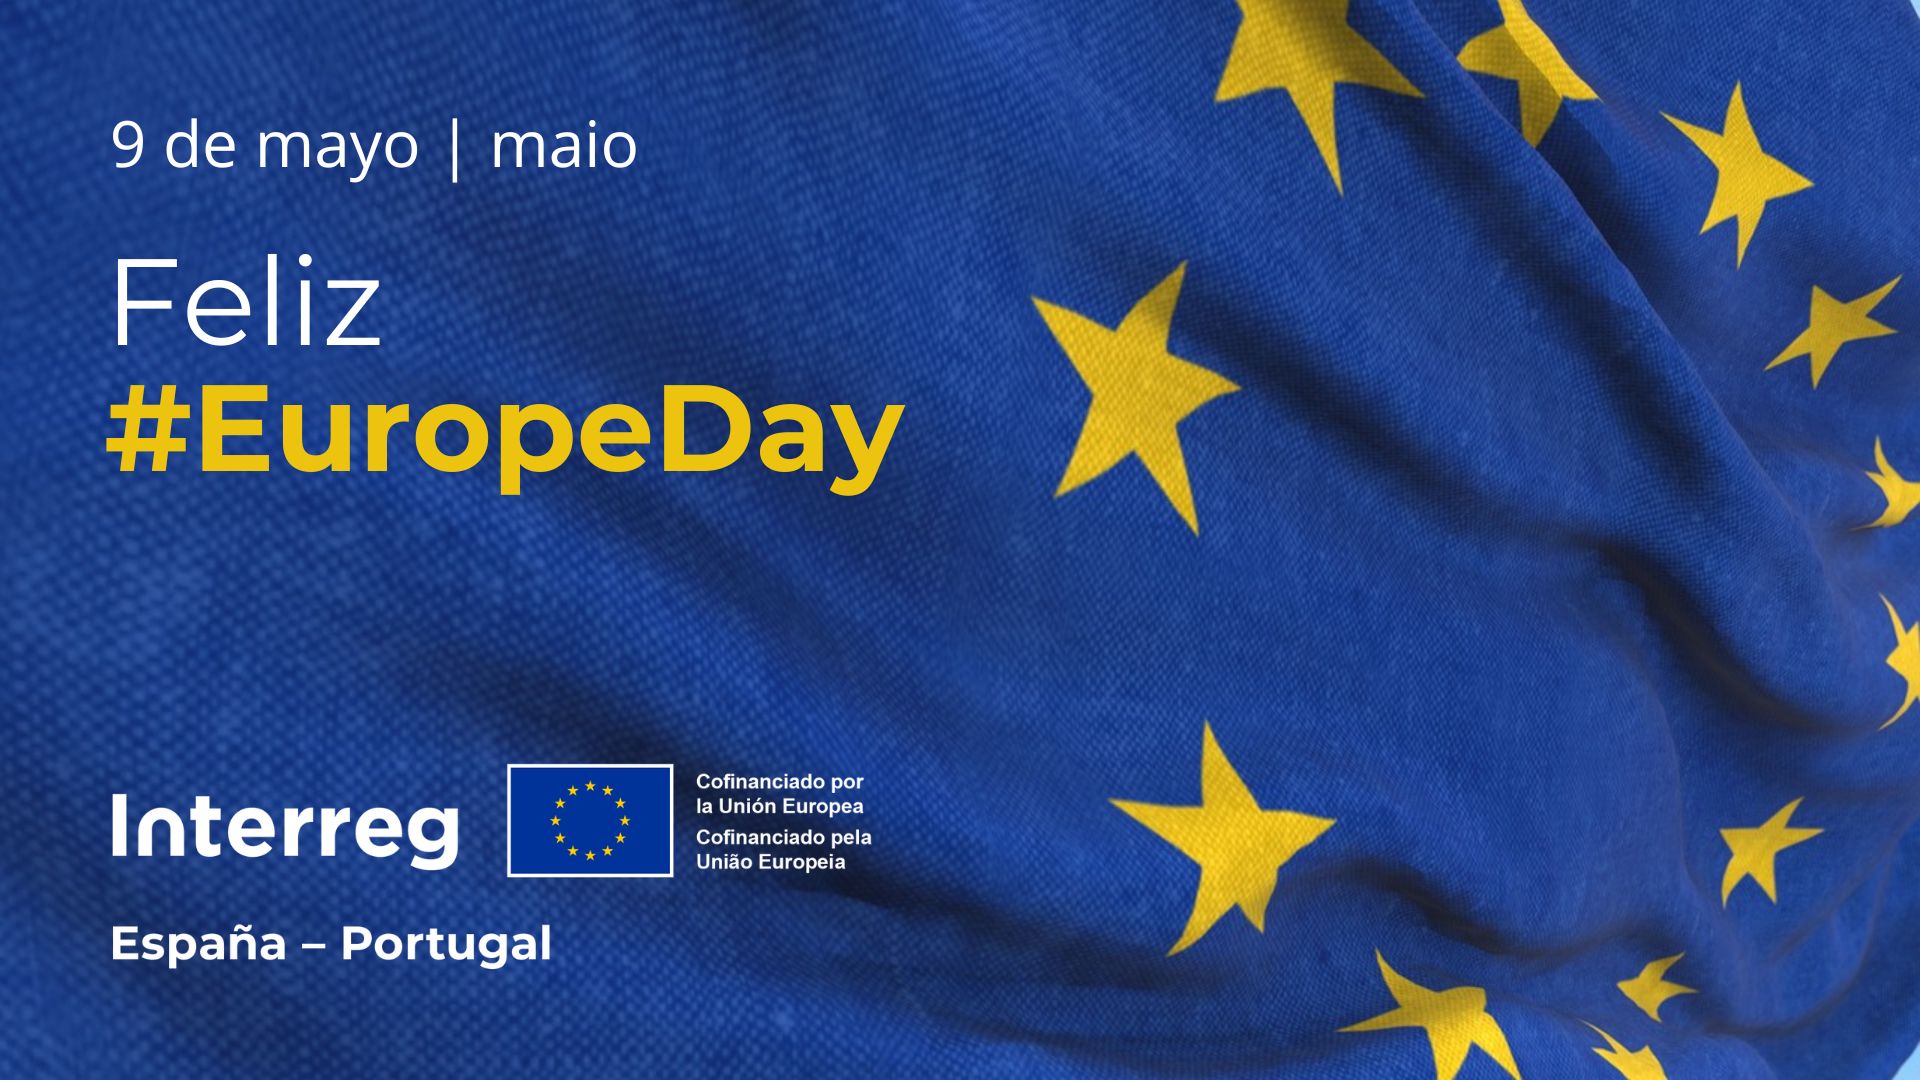 La comunidad Interreg celebra el Día de Europa